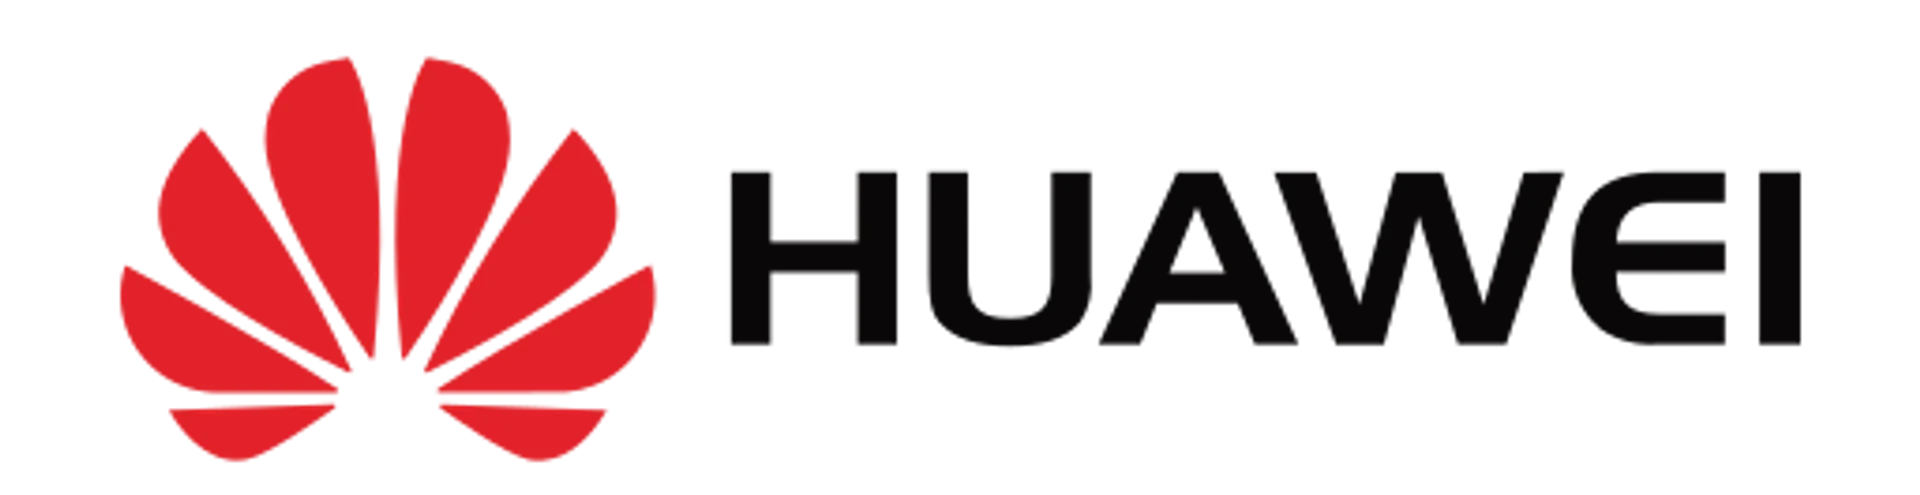 HUAWEI logo de folhetos